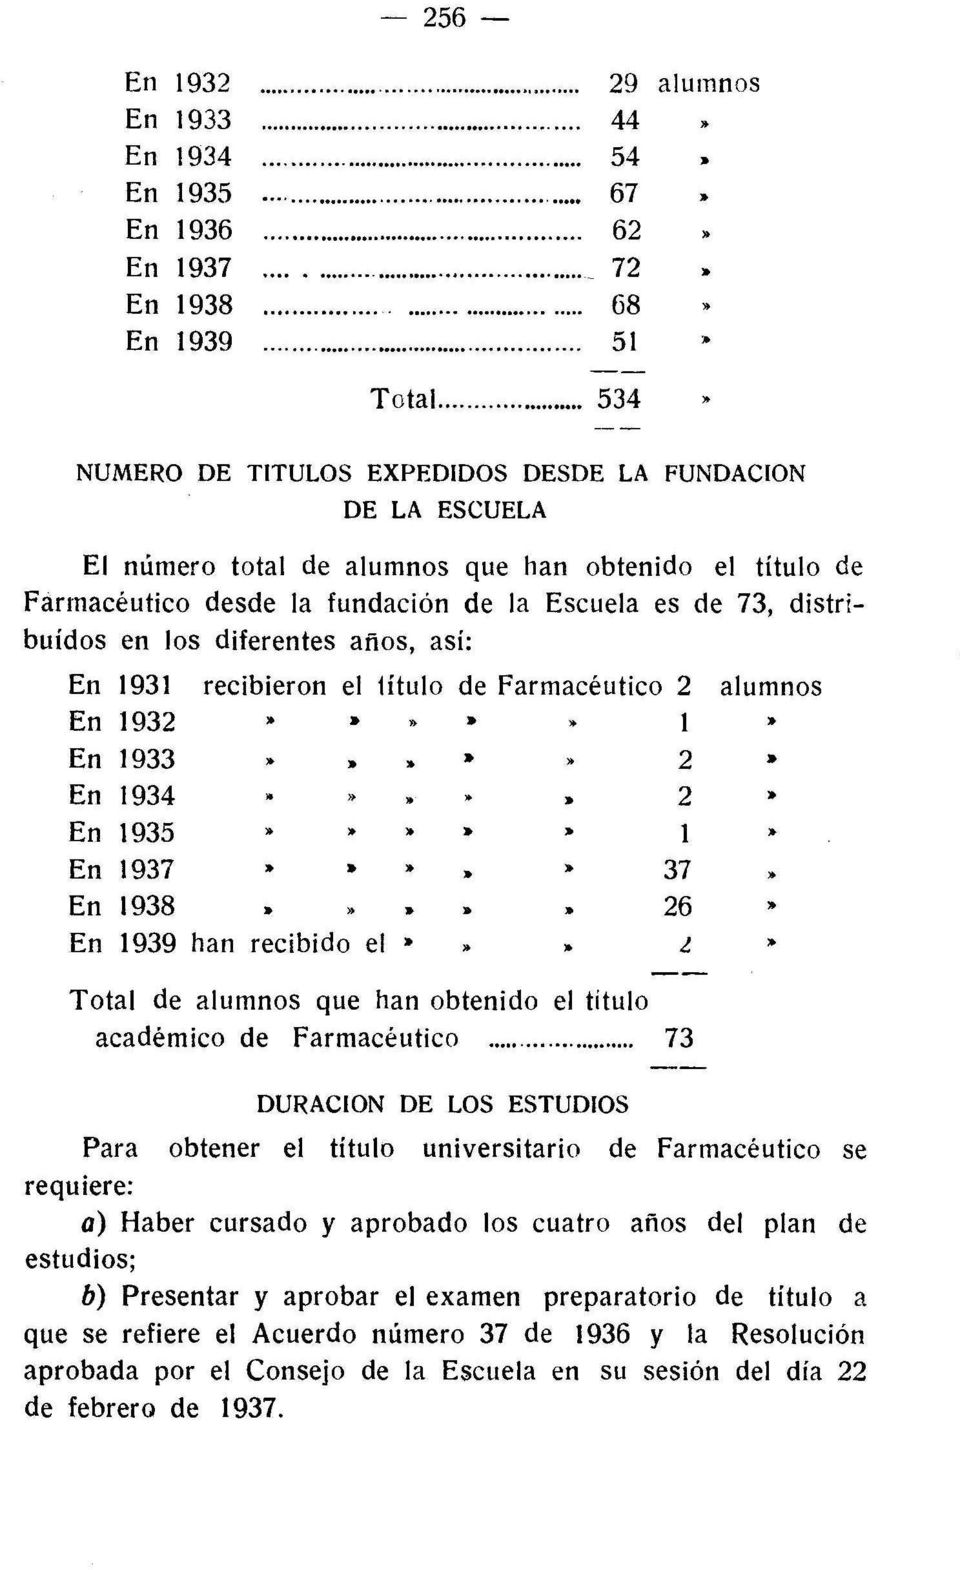 diferentes años, así: 1931 recibieron el título de Farmacéutico 2 alumnos 1932»,.,. 1» 1933»,. 2" 1934» lo 2 lo 1935»»,. lo 1» 1937 lo lo,.,. lo 37 1938 lo lo" 26" 1939 han recibido el lo» 1.